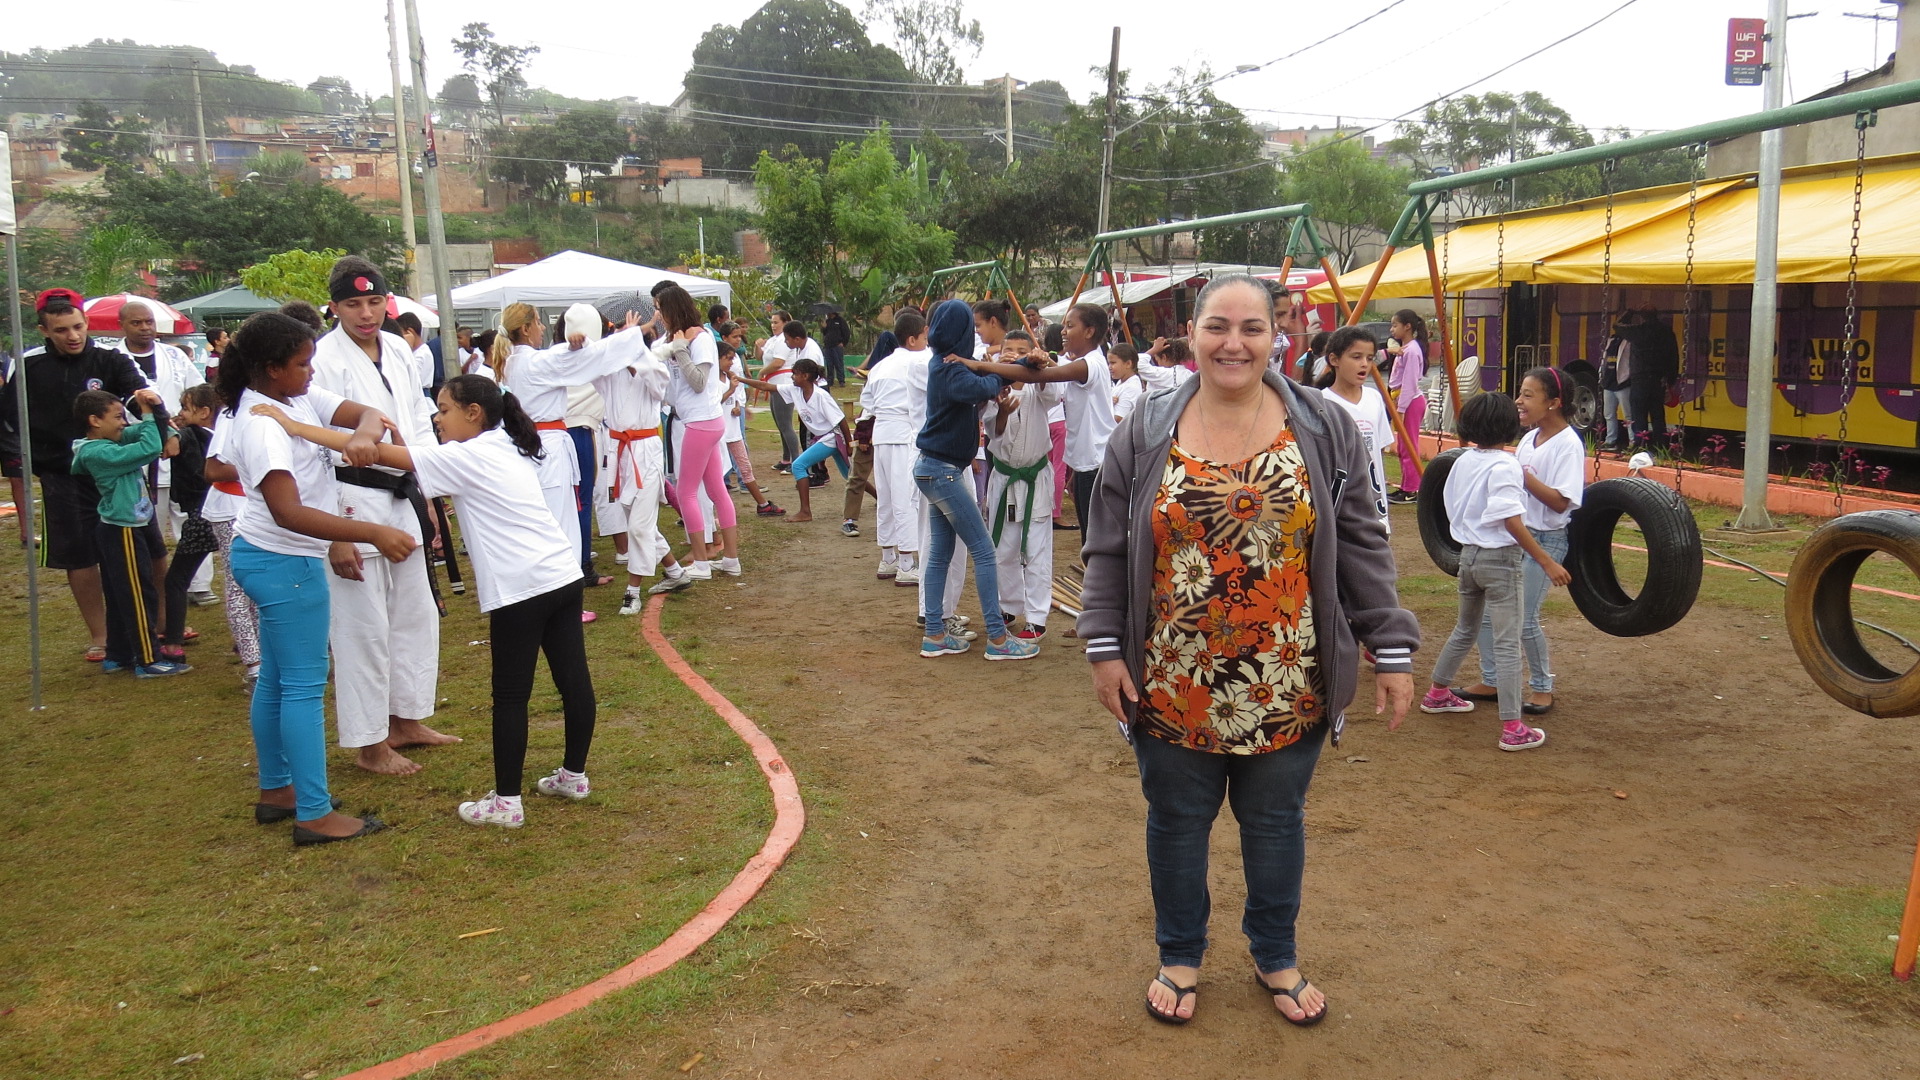 A moradora Sonia da Silva de Souza destaca a importância de ações voltadas para a juventude